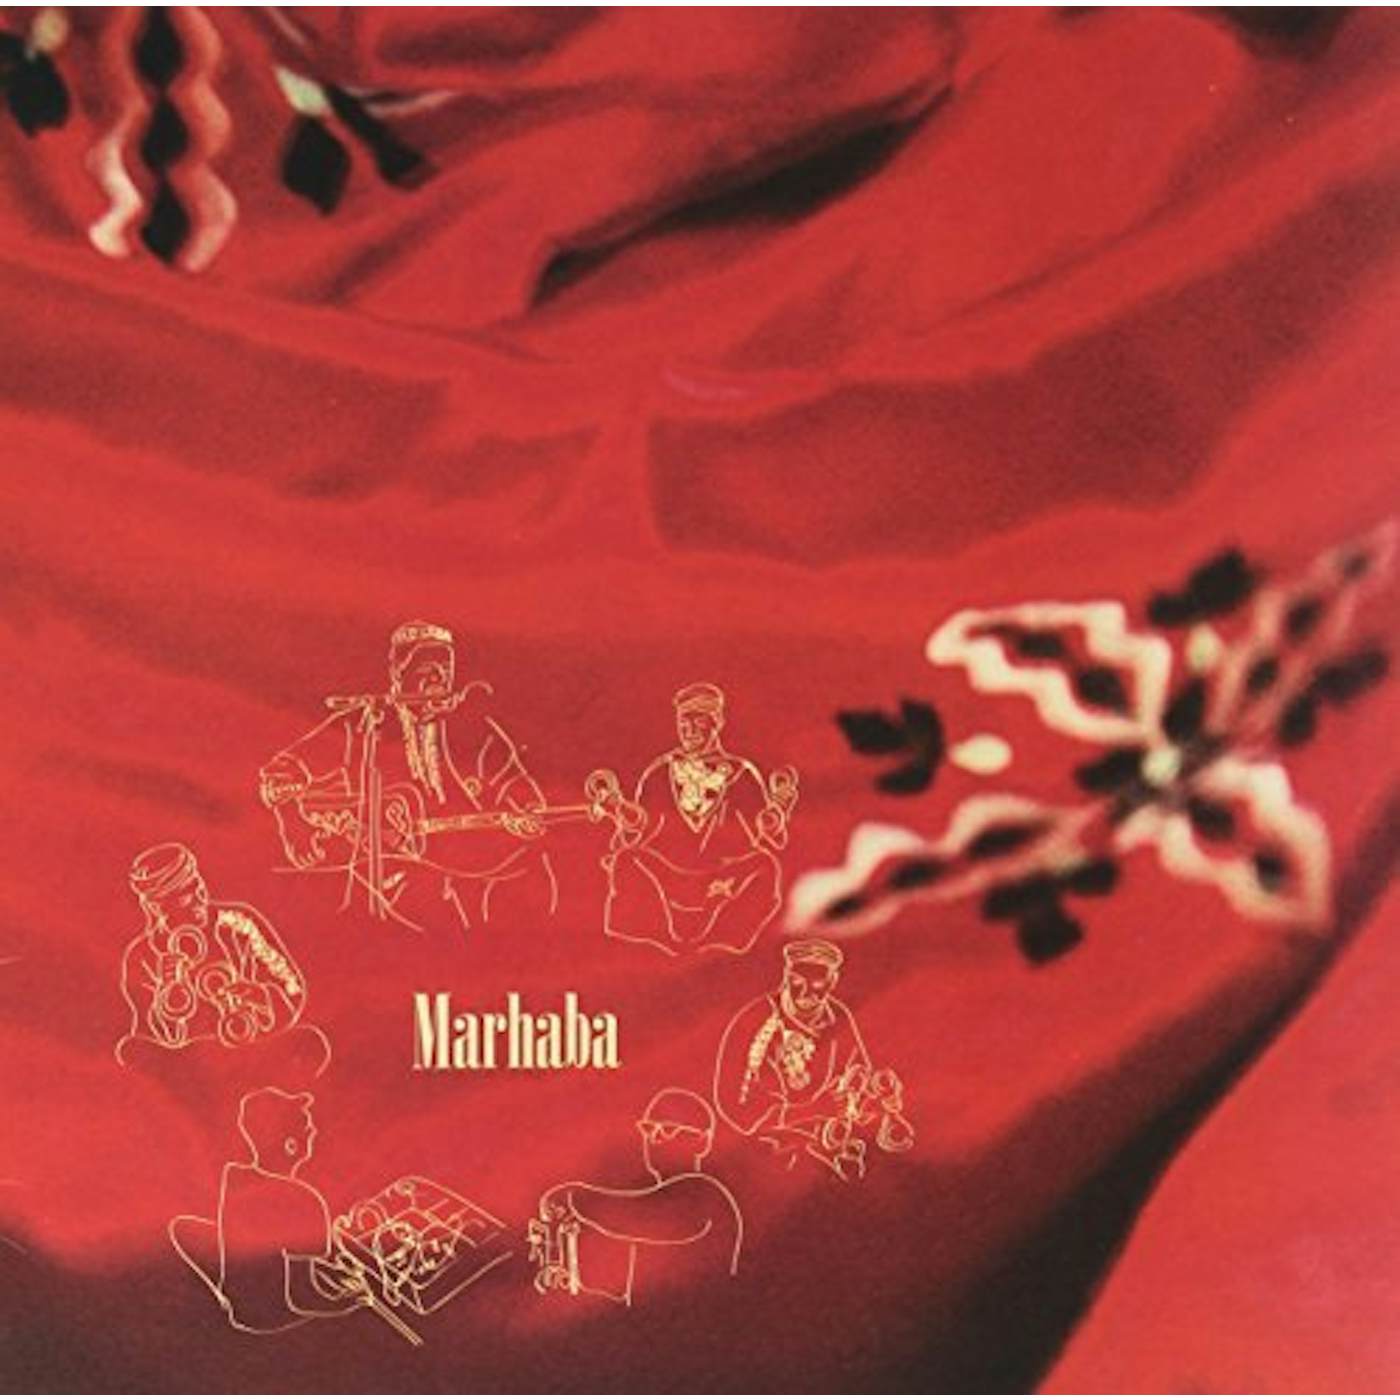 MARHARBA / VARIOUS Vinyl Record - UK Release